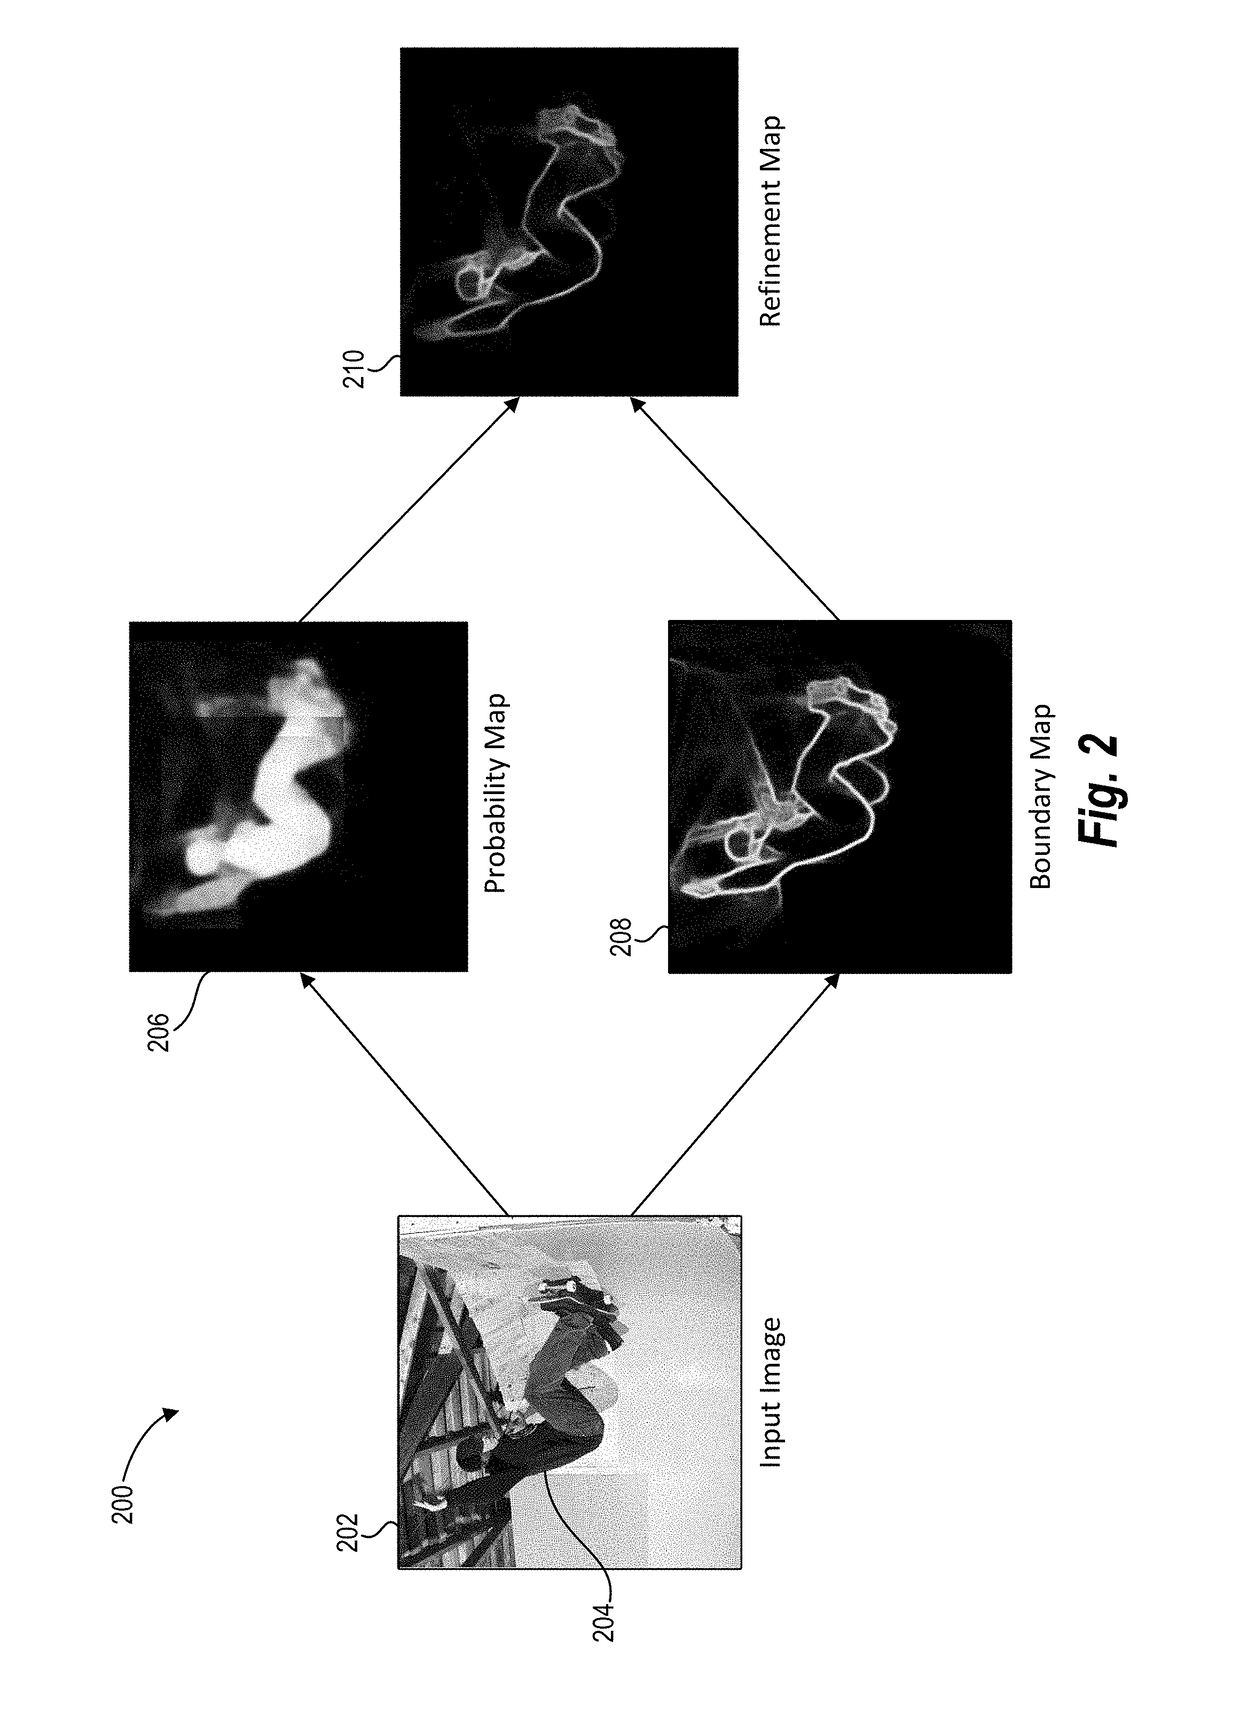 Utilizing deep learning for boundary-aware image segmentation